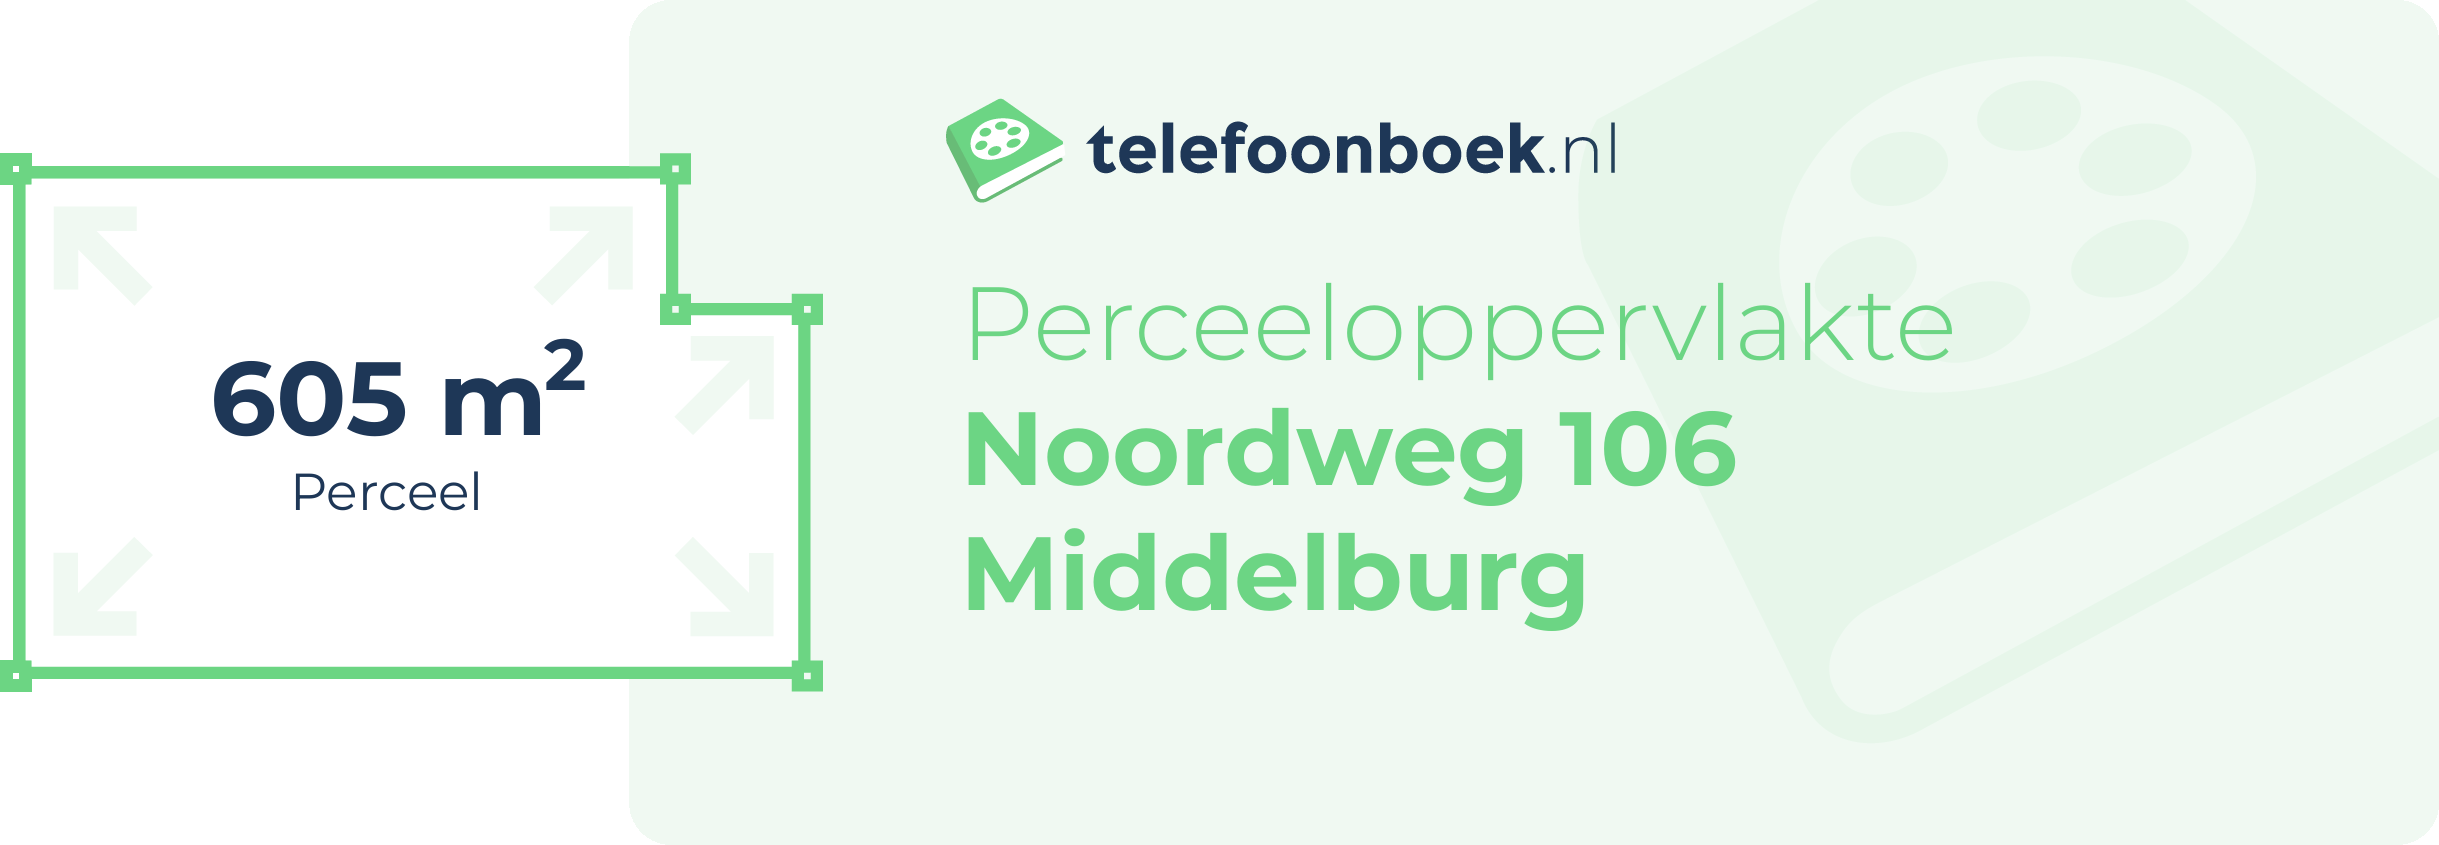 Perceeloppervlakte Noordweg 106 Middelburg